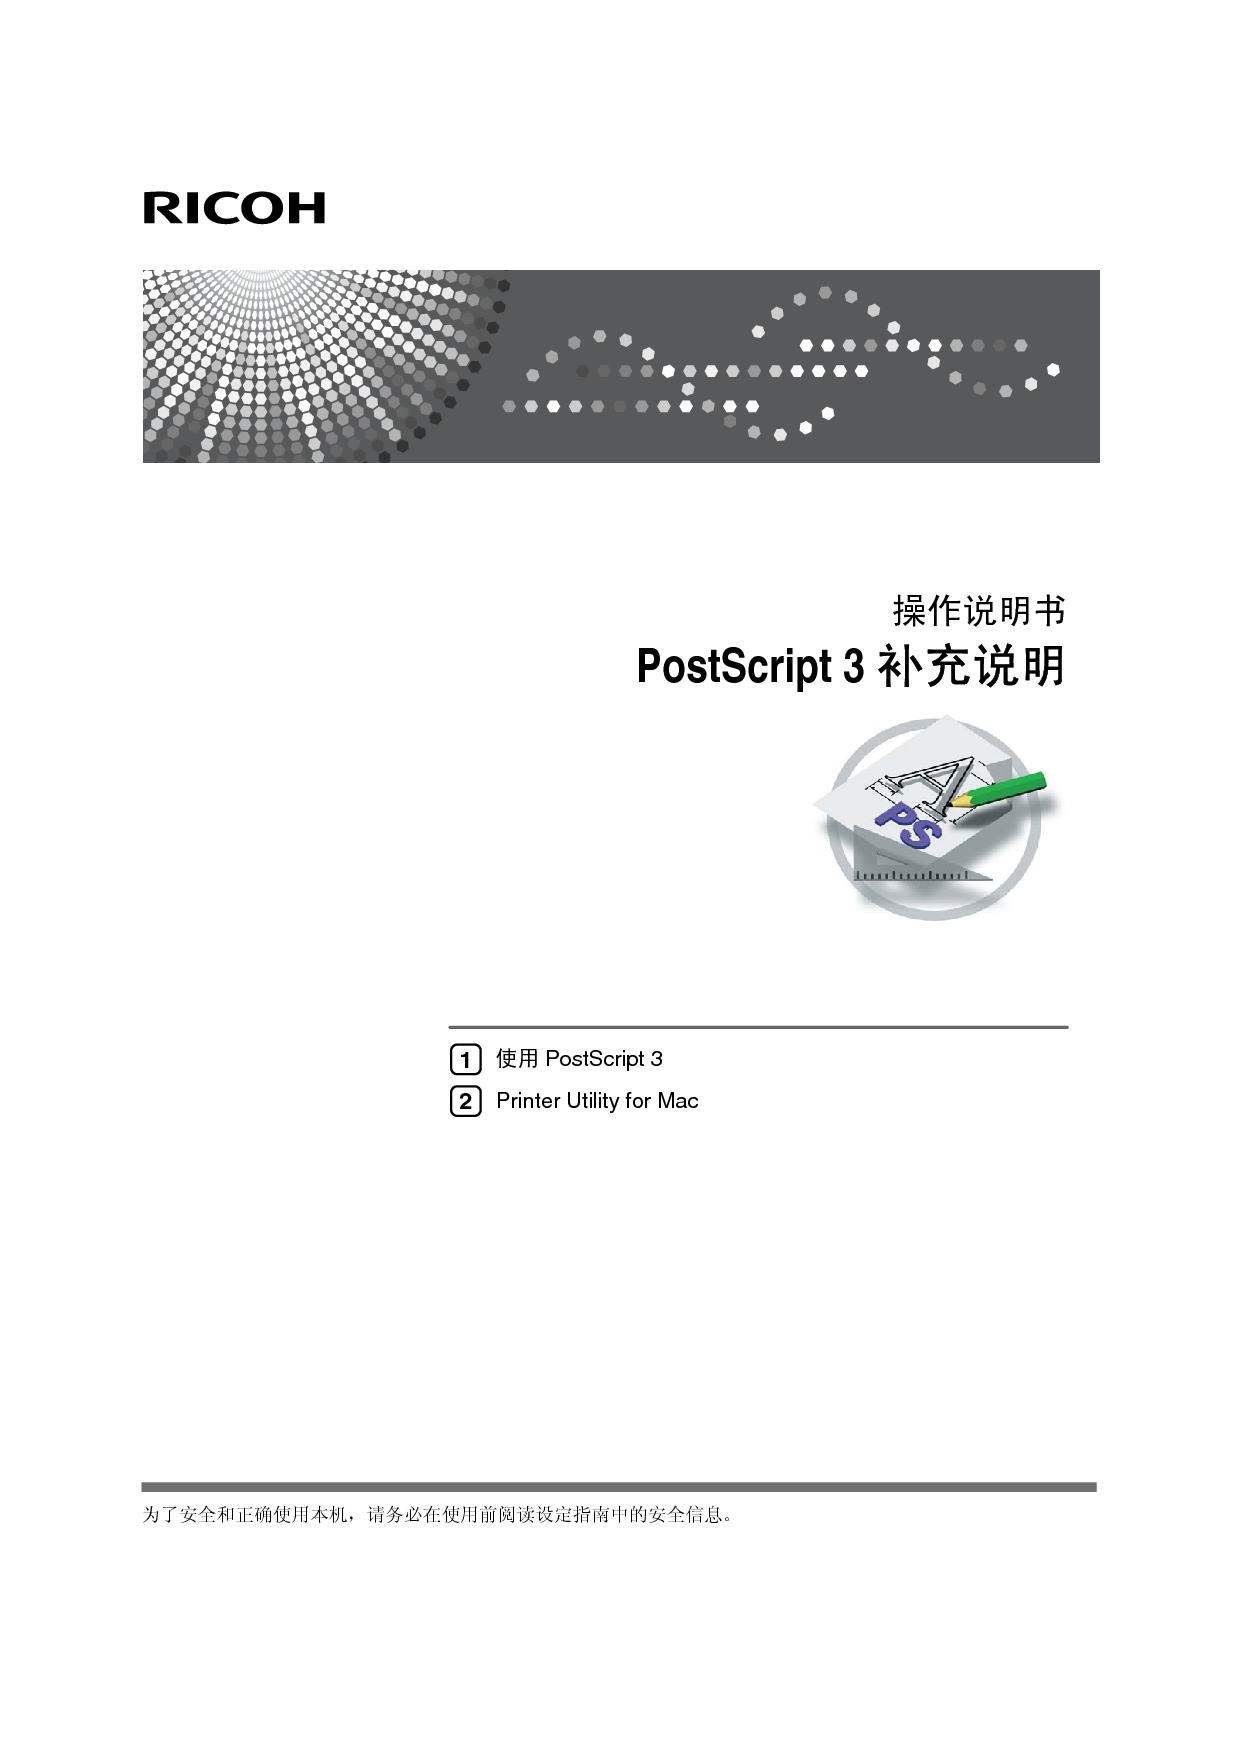 理光 Ricoh Aficio SP C220N PostScript 3 说明书补充 封面